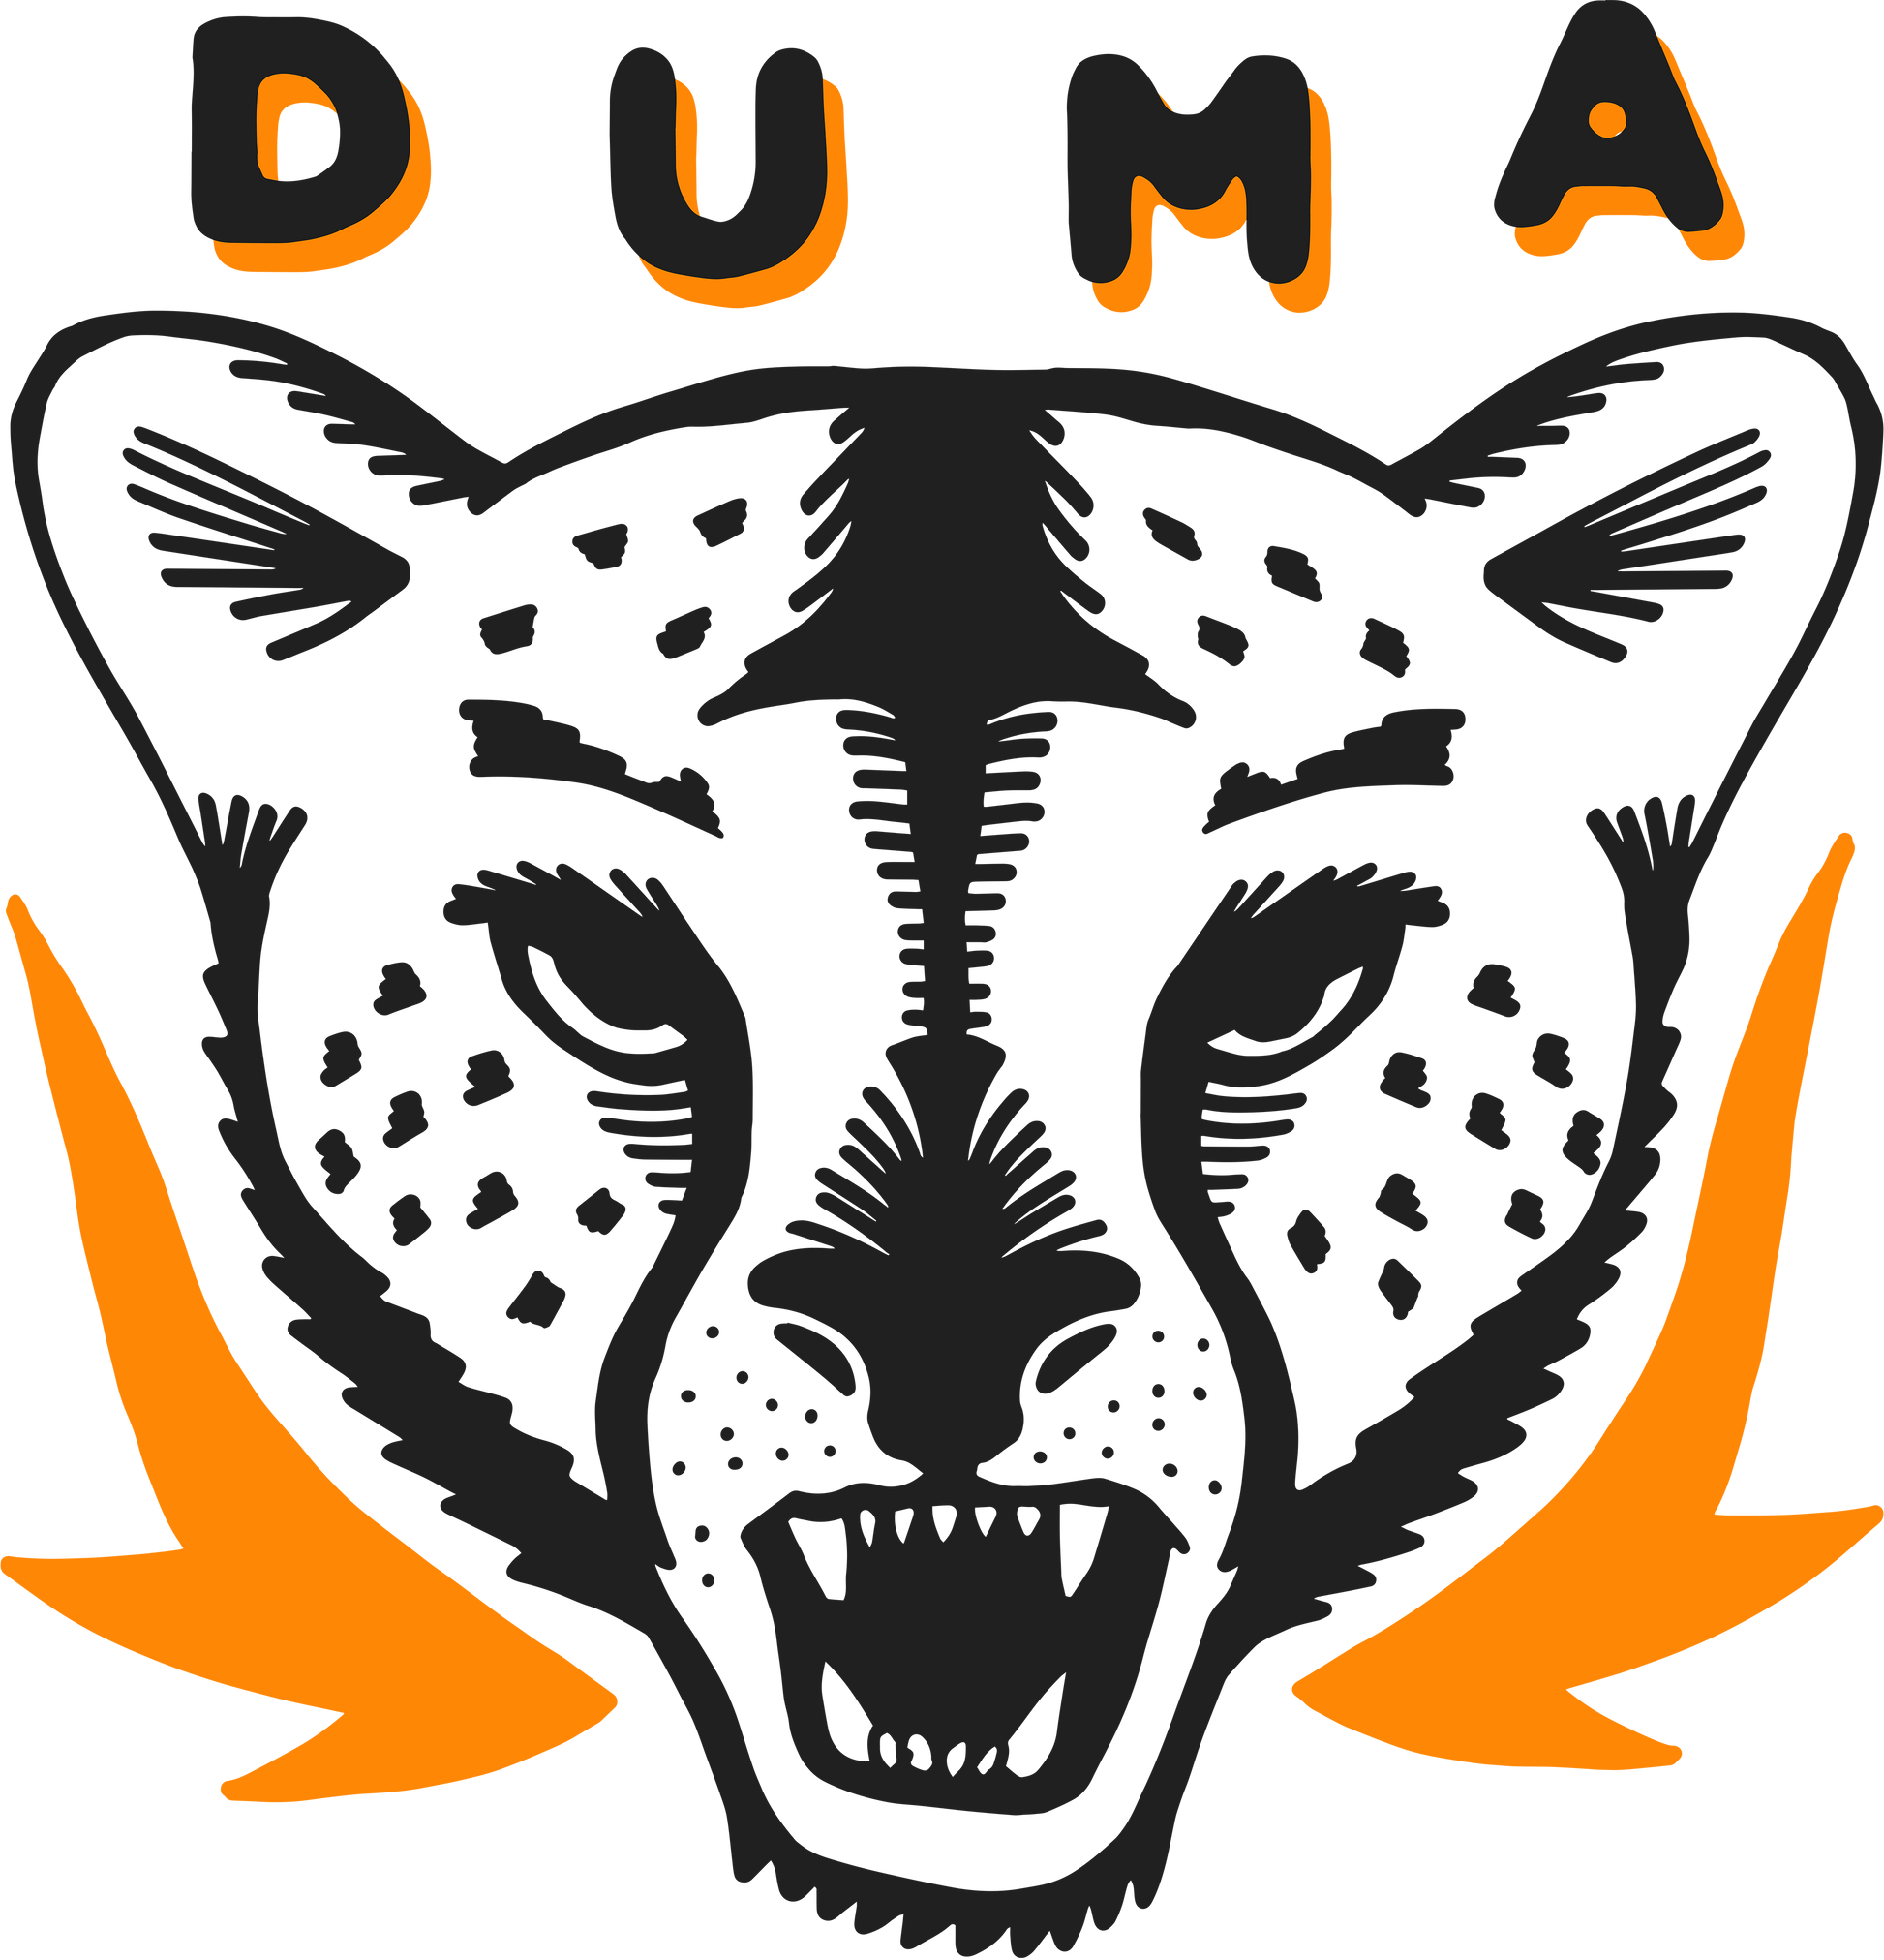 Kenya, Duma, logo